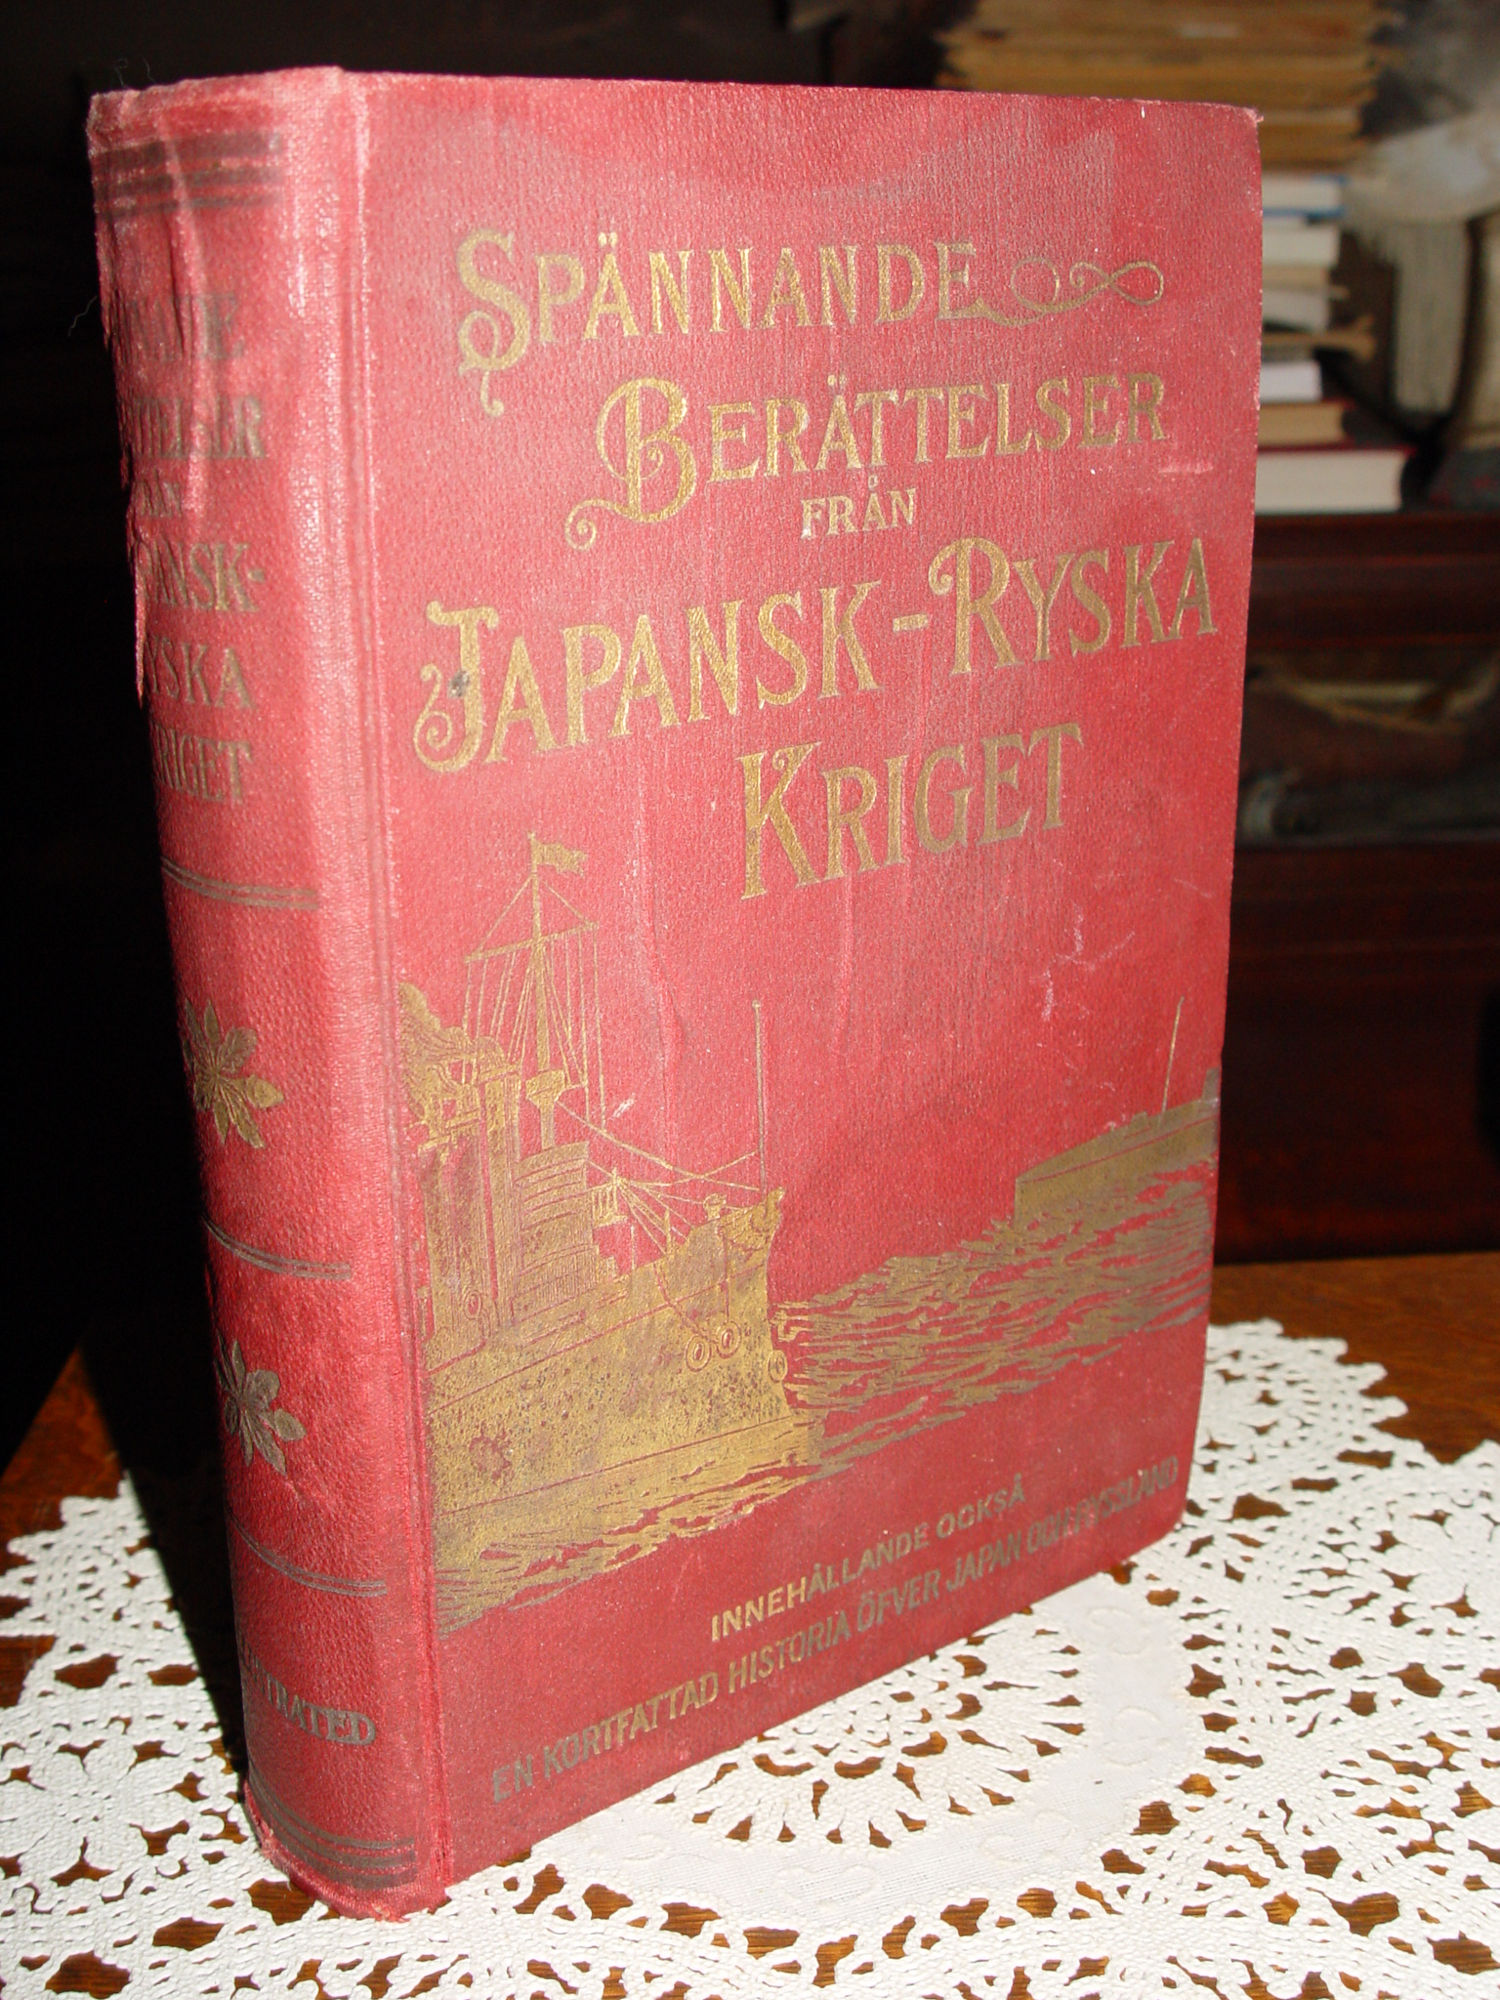 Swedish; Spännande berättelser från
                        japansk-ryska kriget 1905